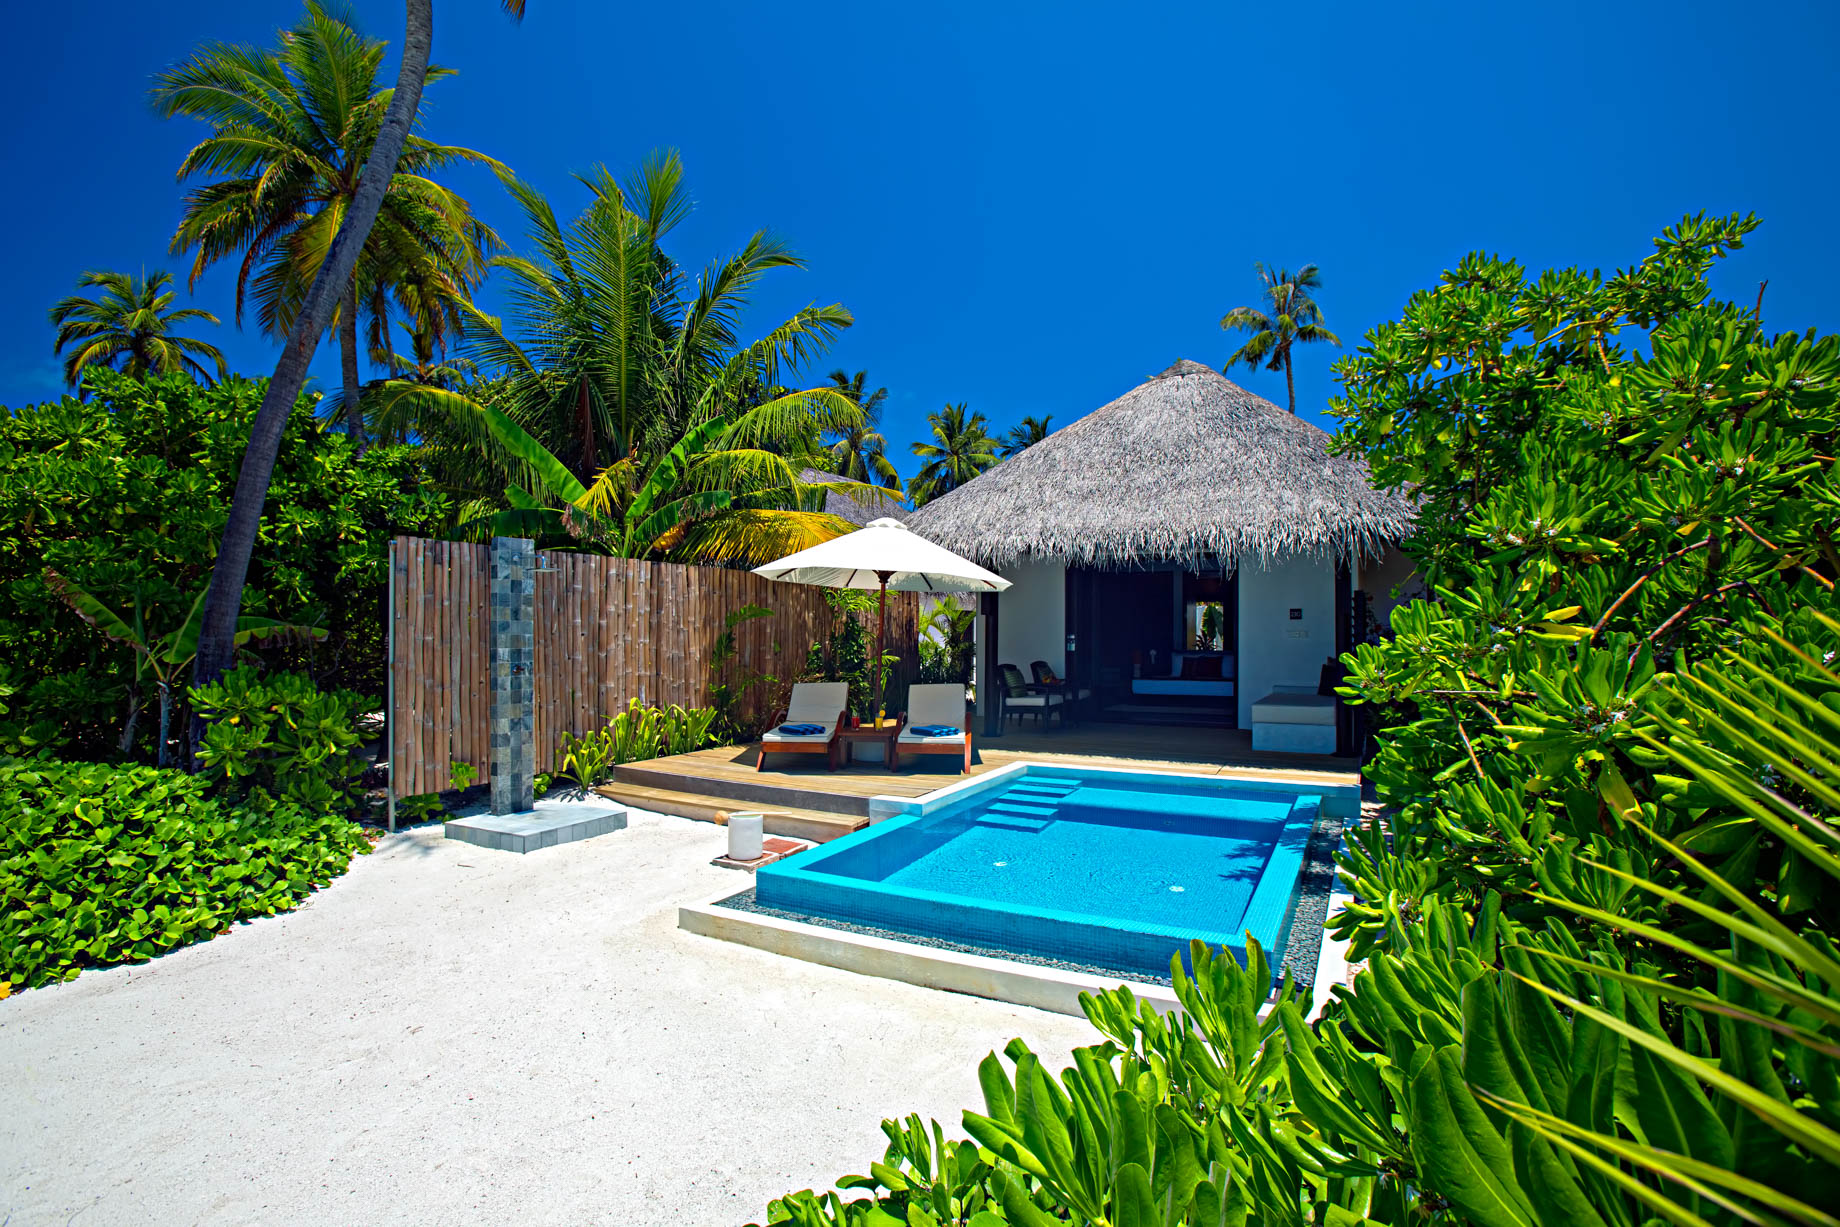 Velassaru Maldives Resort – South Male Atoll, Maldives – Beachfront Pool Chairs